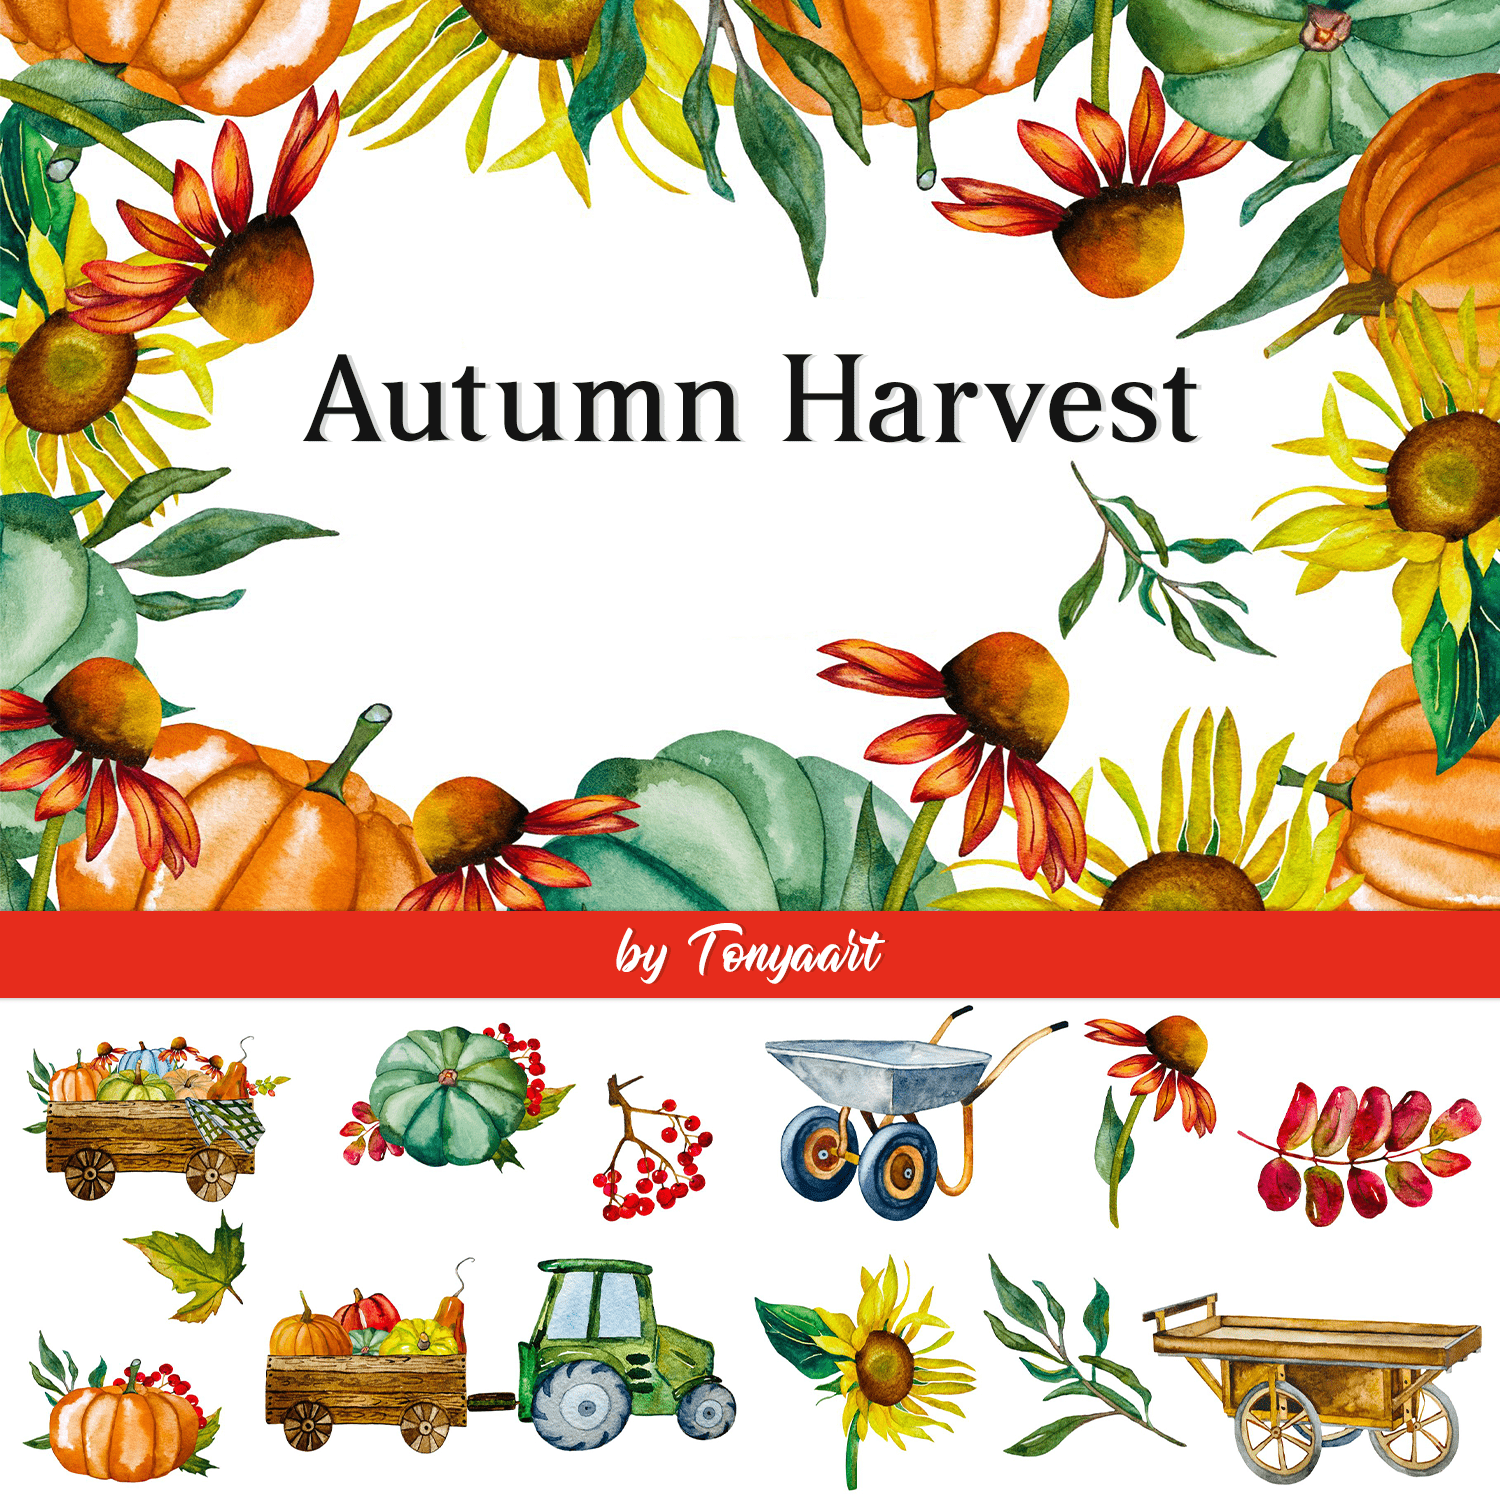 Autumn Harvest cover.